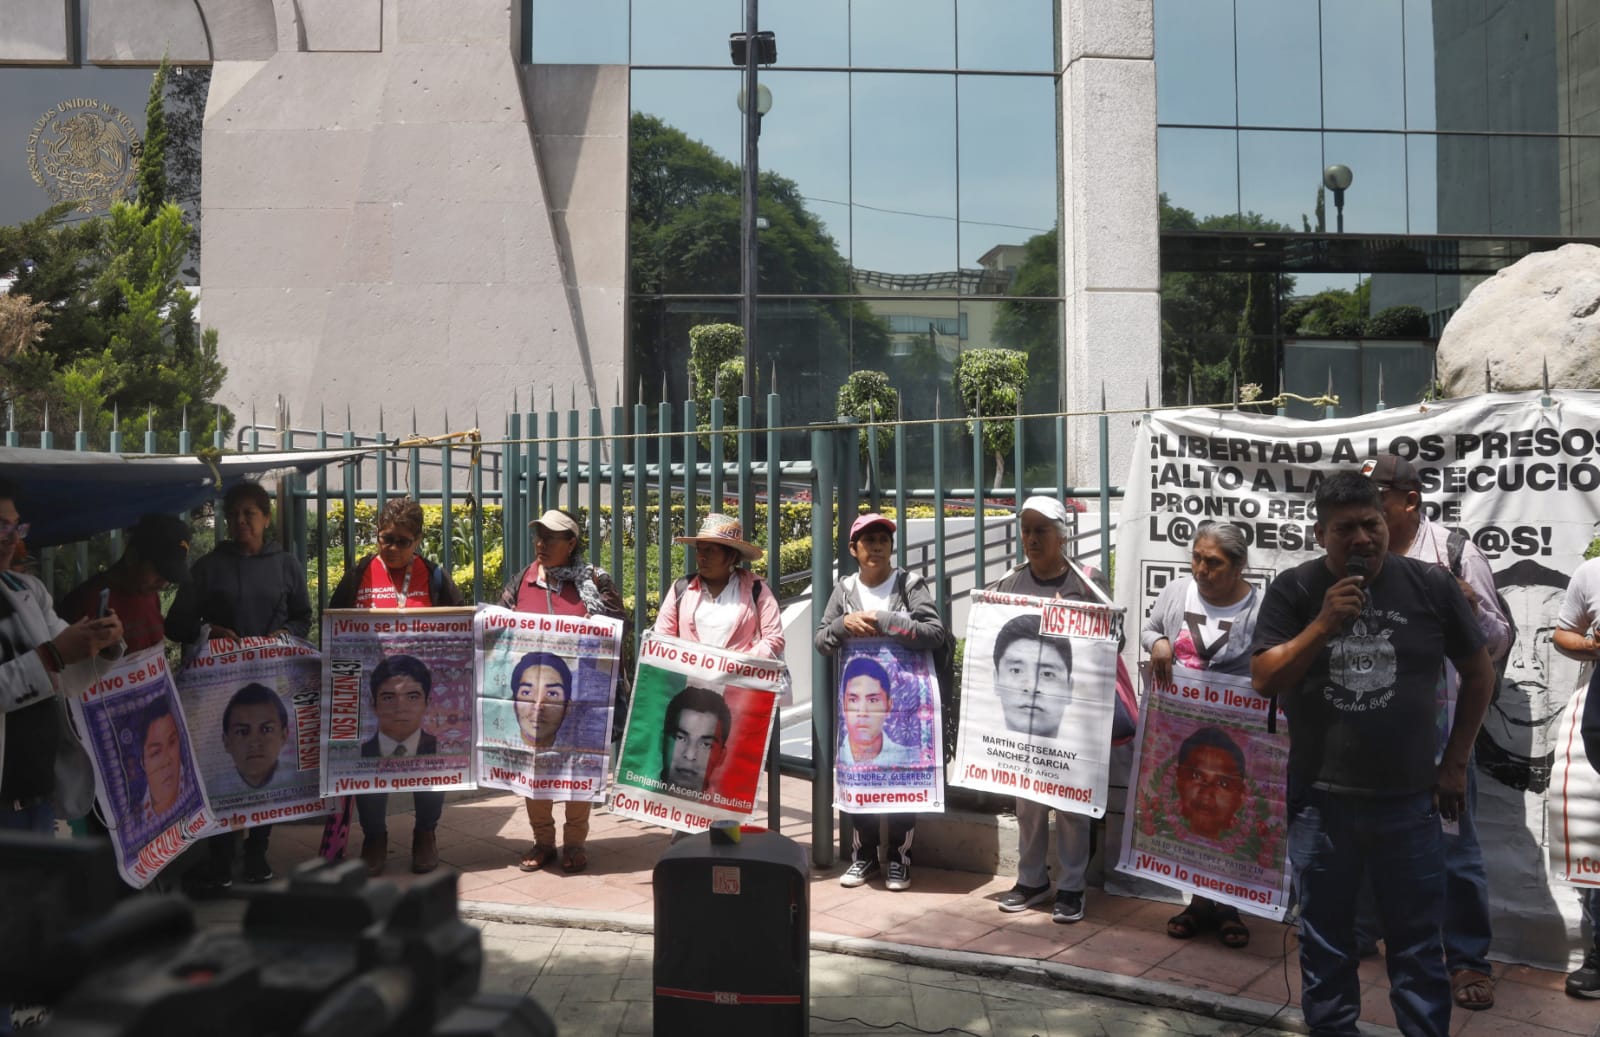 El poder judicial de la federación tiene que abonar a la justicia en el caso Ayotzinapa